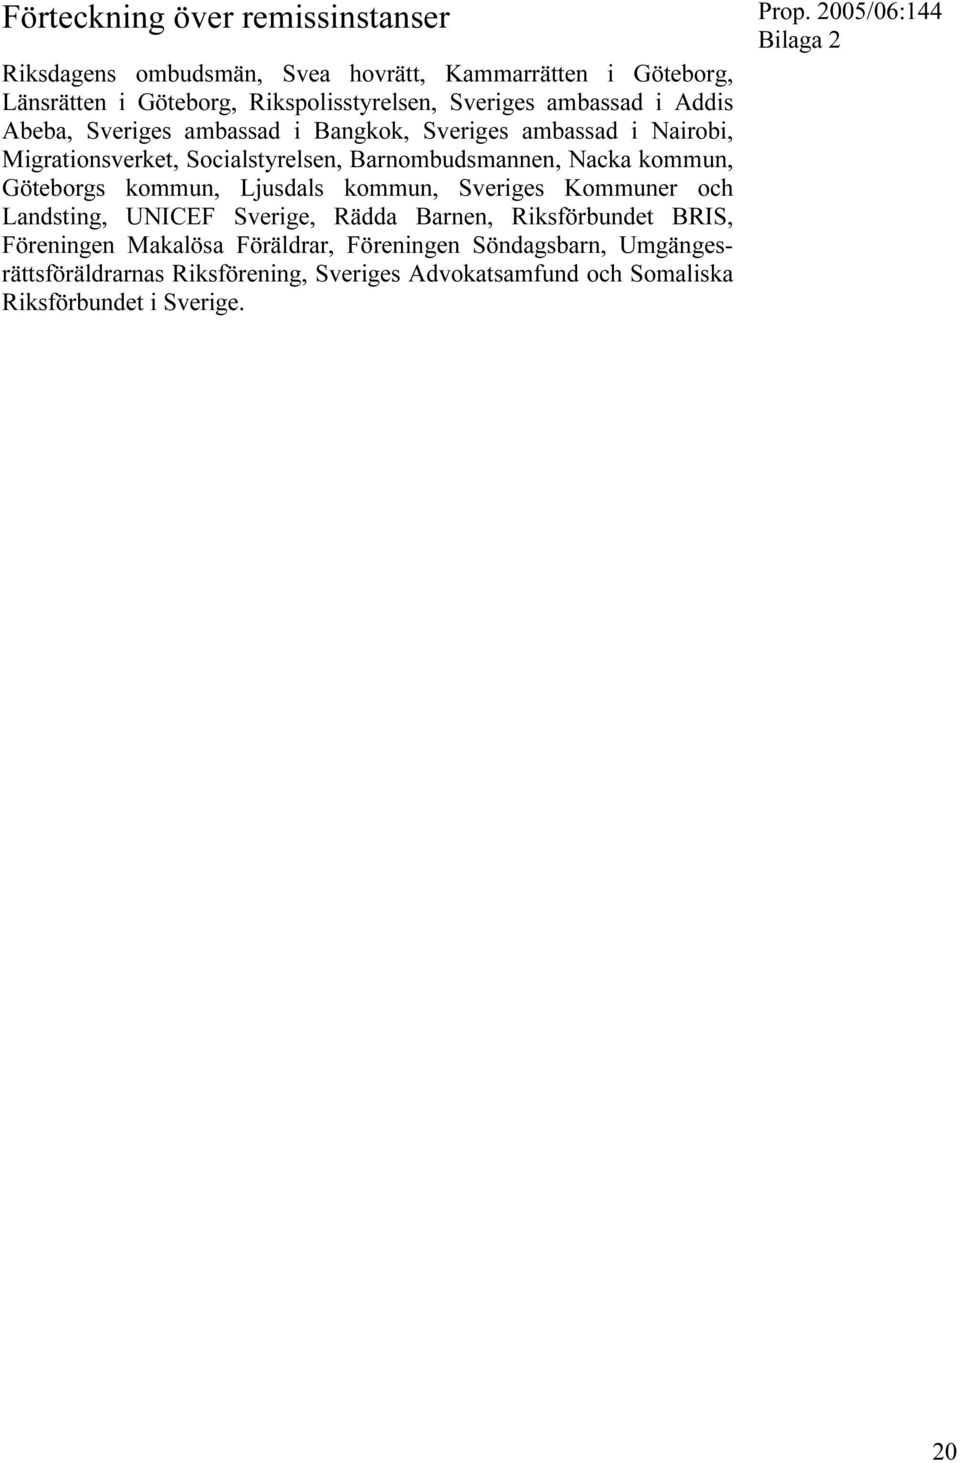 kommun, Göteborgs kommun, Ljusdals kommun, Sveriges Kommuner och Landsting, UNICEF Sverige, Rädda Barnen, Riksförbundet BRIS, Föreningen Makalösa